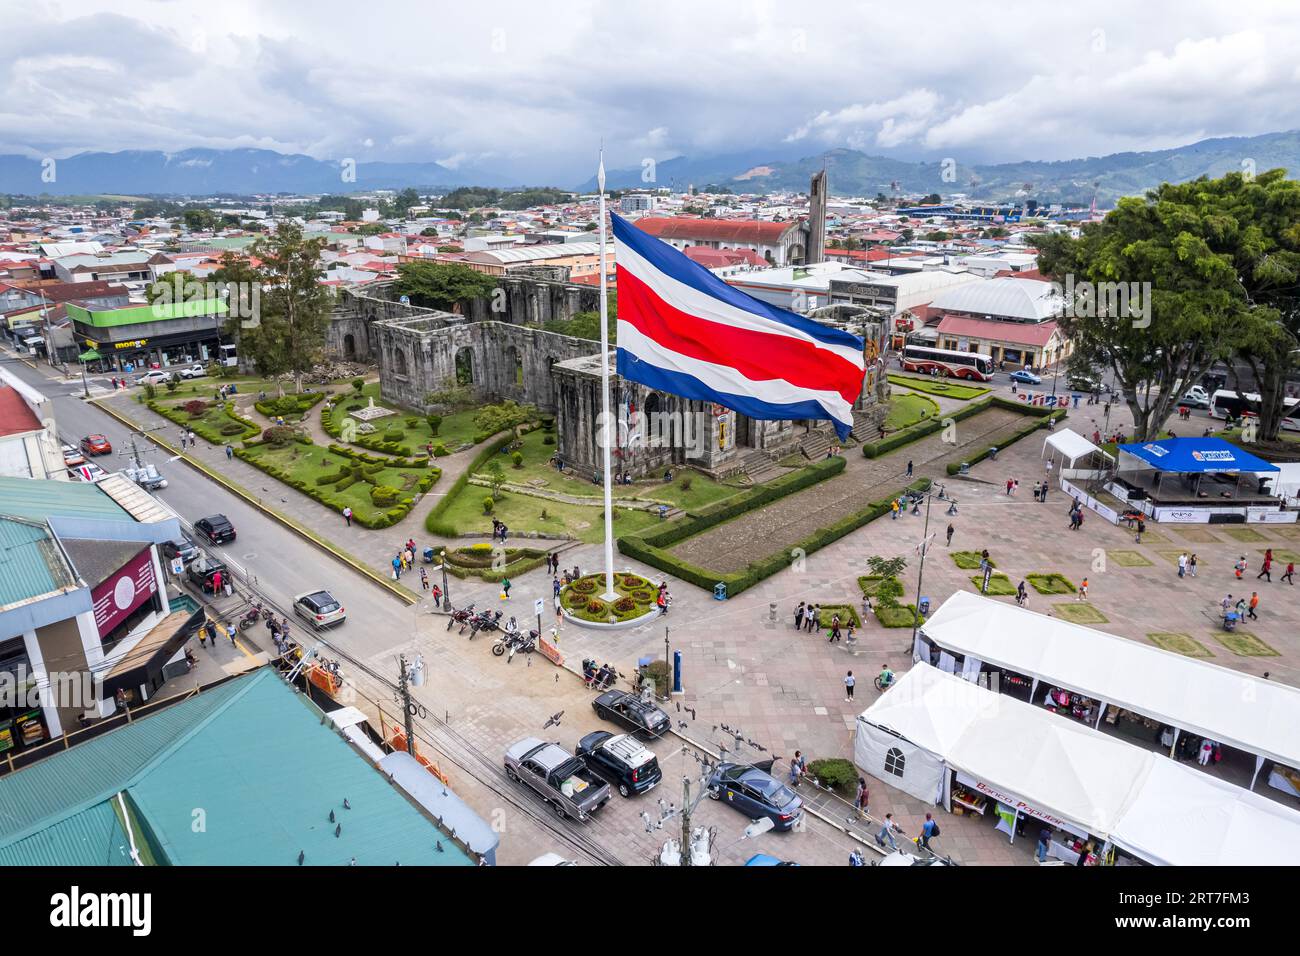 Wunderschöner Blick auf die Costa Rica Flagge mit dem zweihundertjährigen Engel in Cartago, neben den Ruinen und der Basilika - Costa Rica Patriotische Symbole Stockfoto